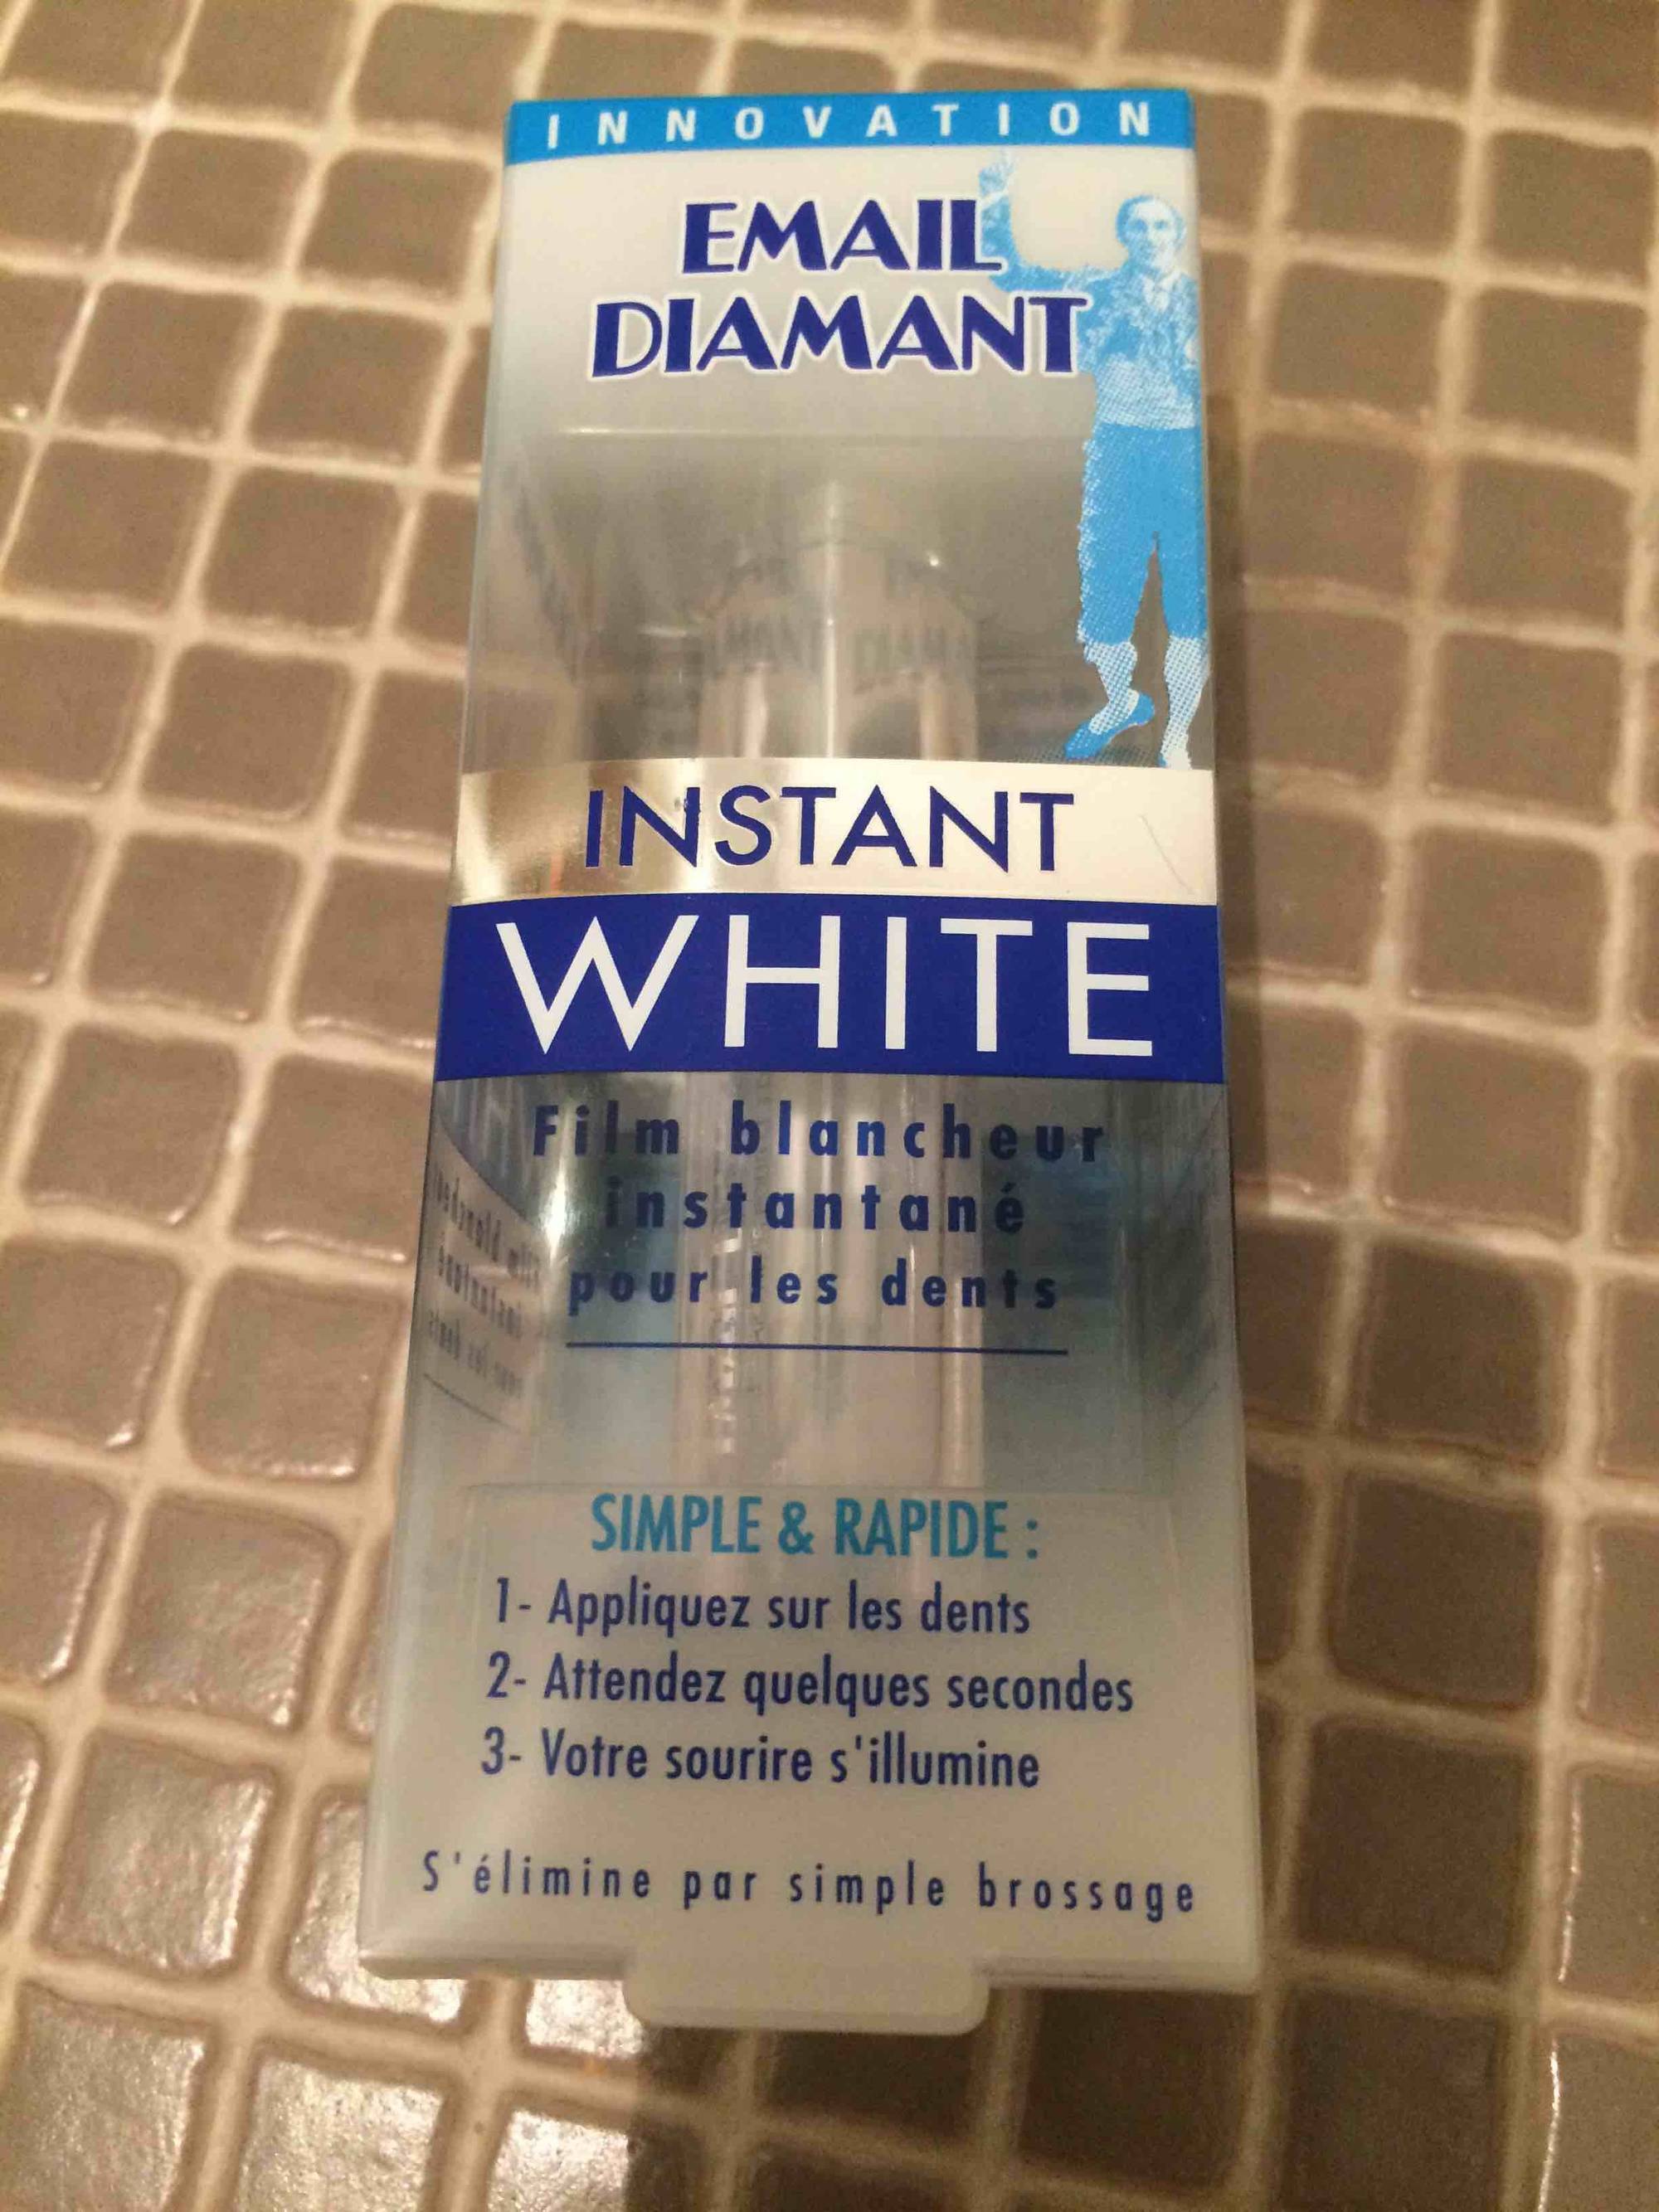 EMAIL DIAMANT - Instant White - Film blancheur instantané pour les dents